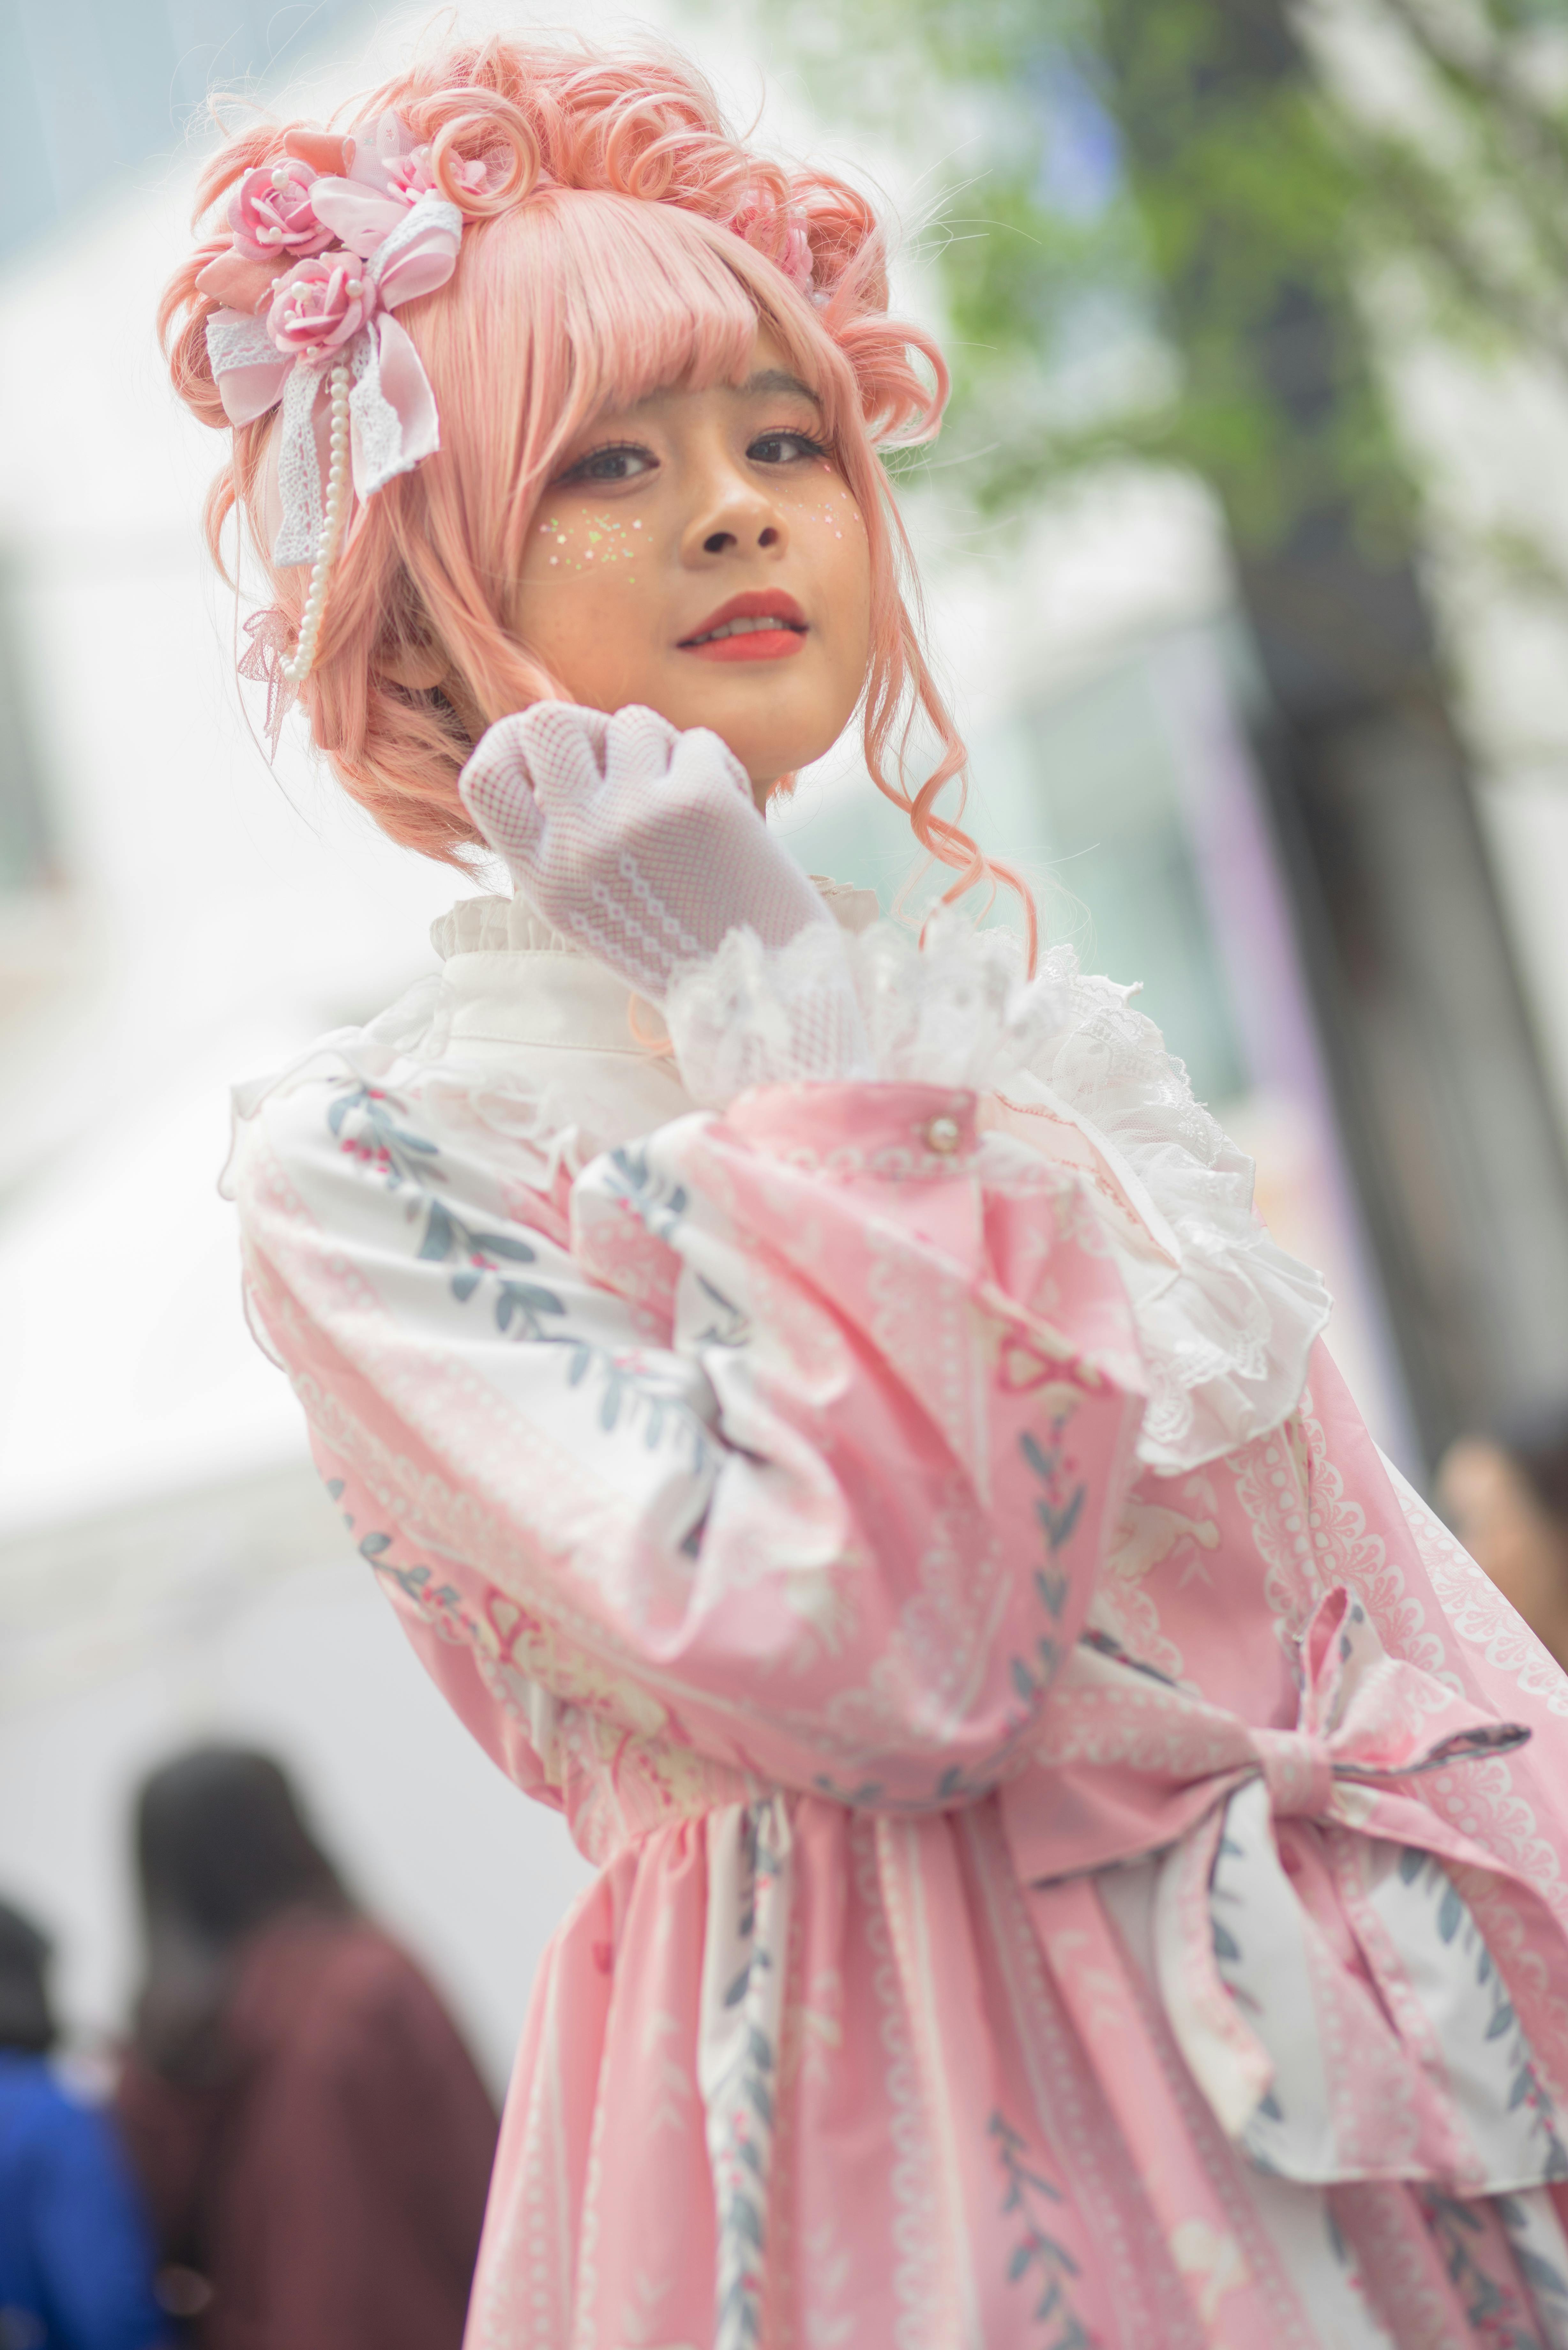 A woman in Lolita fashion attire | Source: Pexels